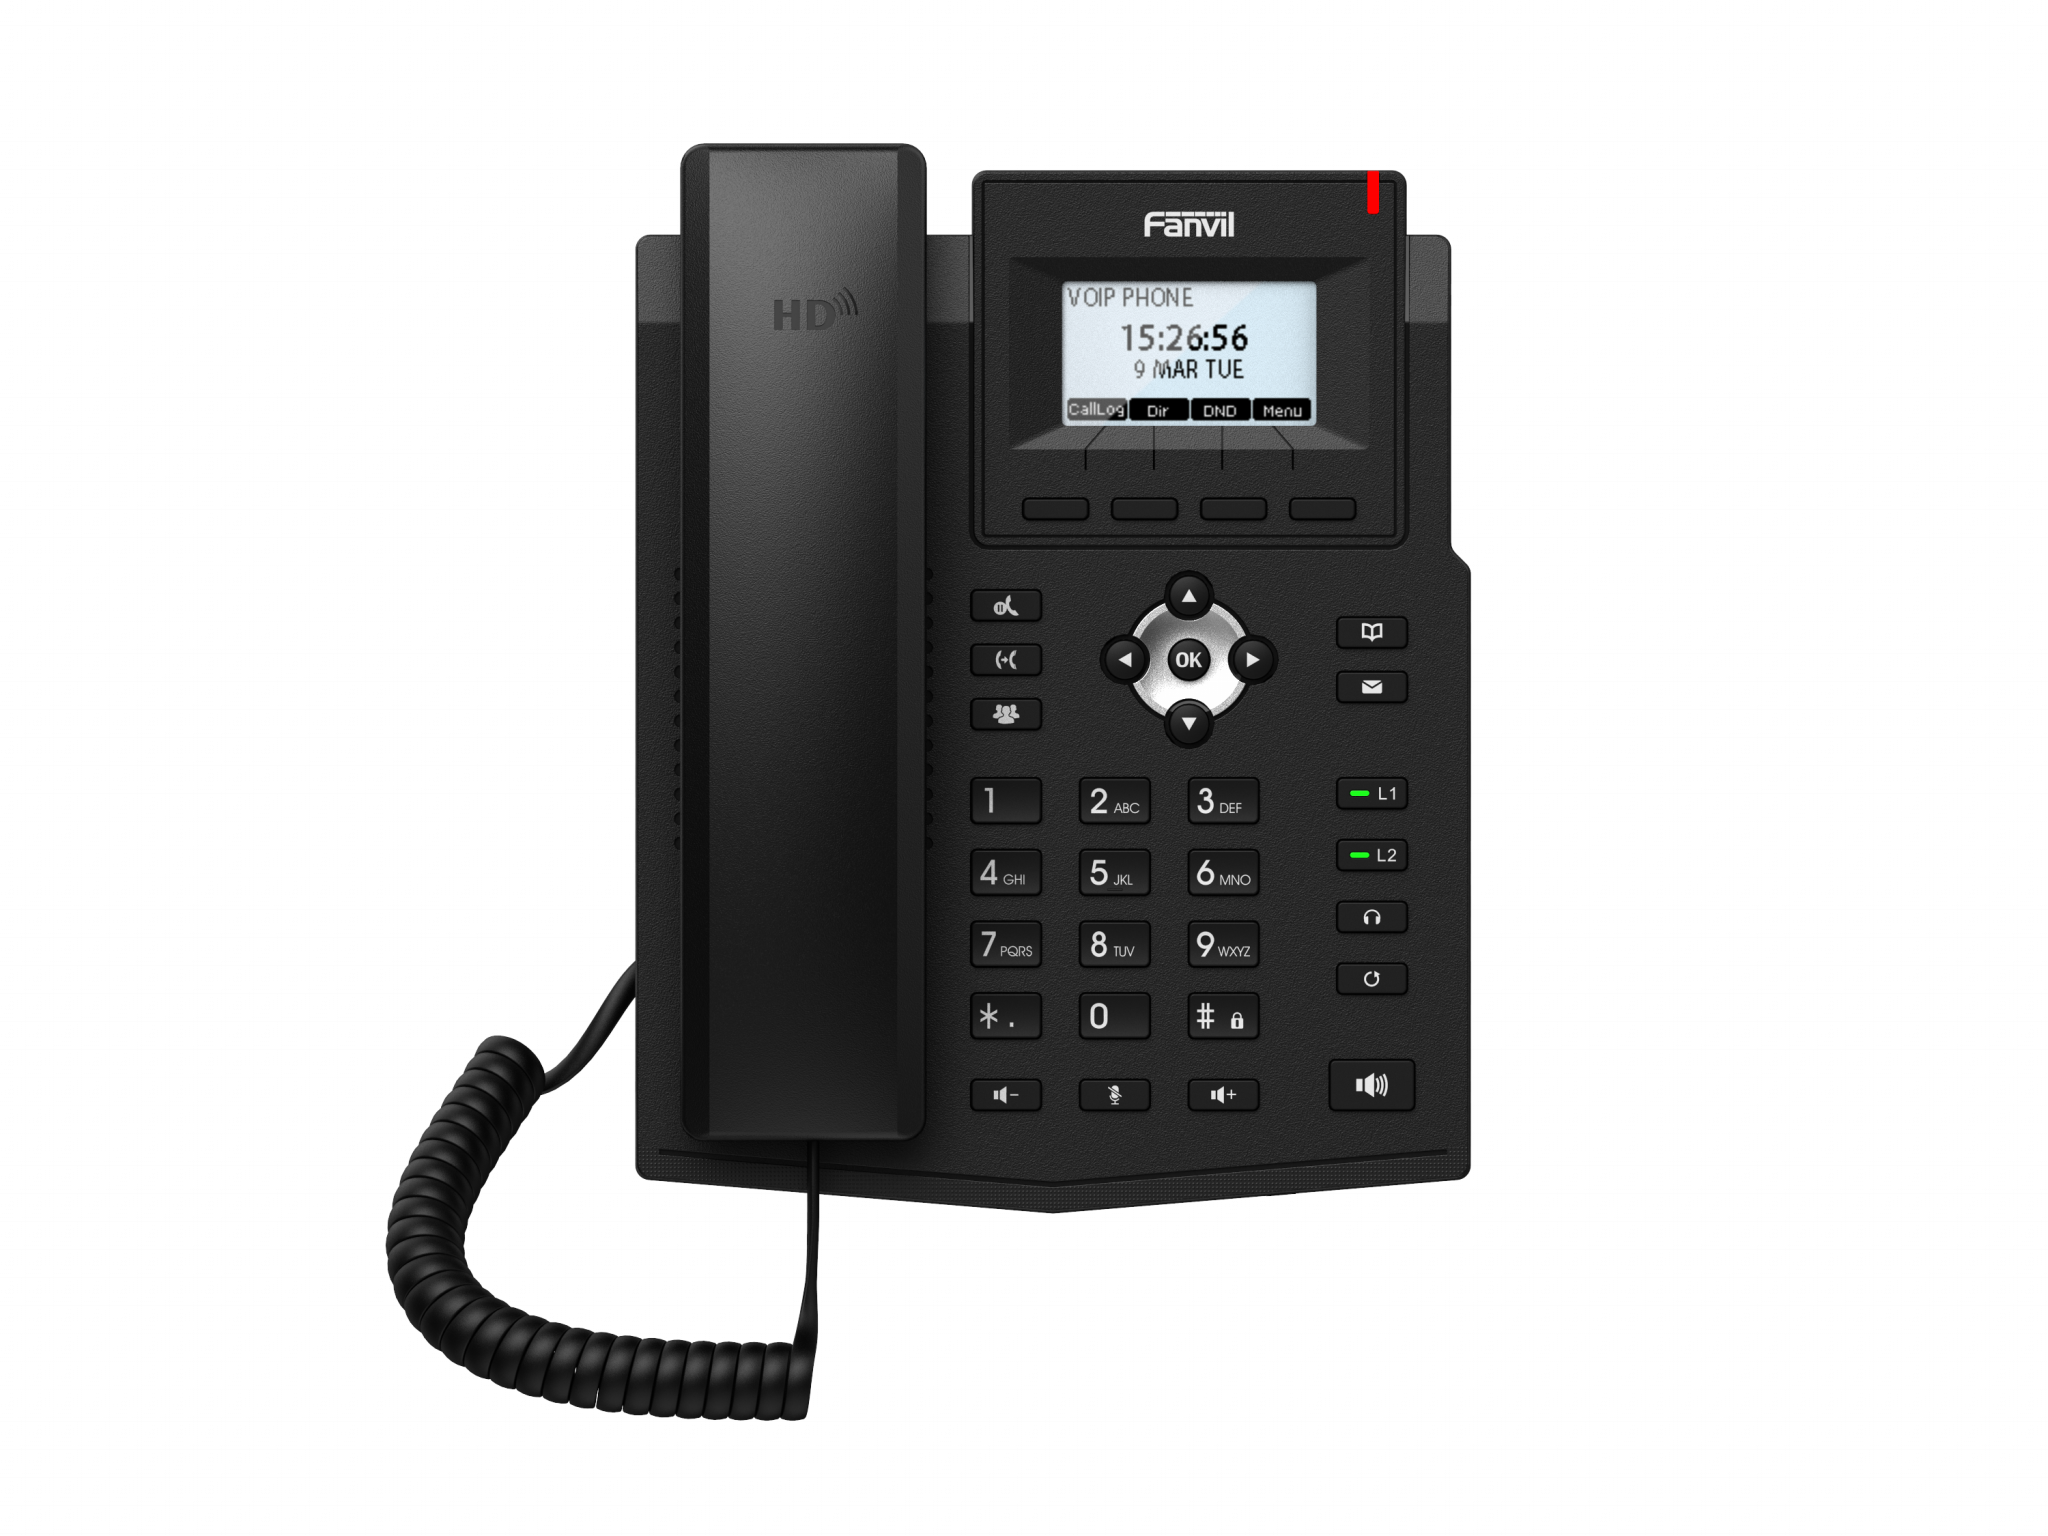 VoIP телефоны VoIP-телефон Fanvil X3SG Lite, 2 линии, 2 SIP-аккаунта, монохромный дисплей, PoE, черный (X3SG LITE)